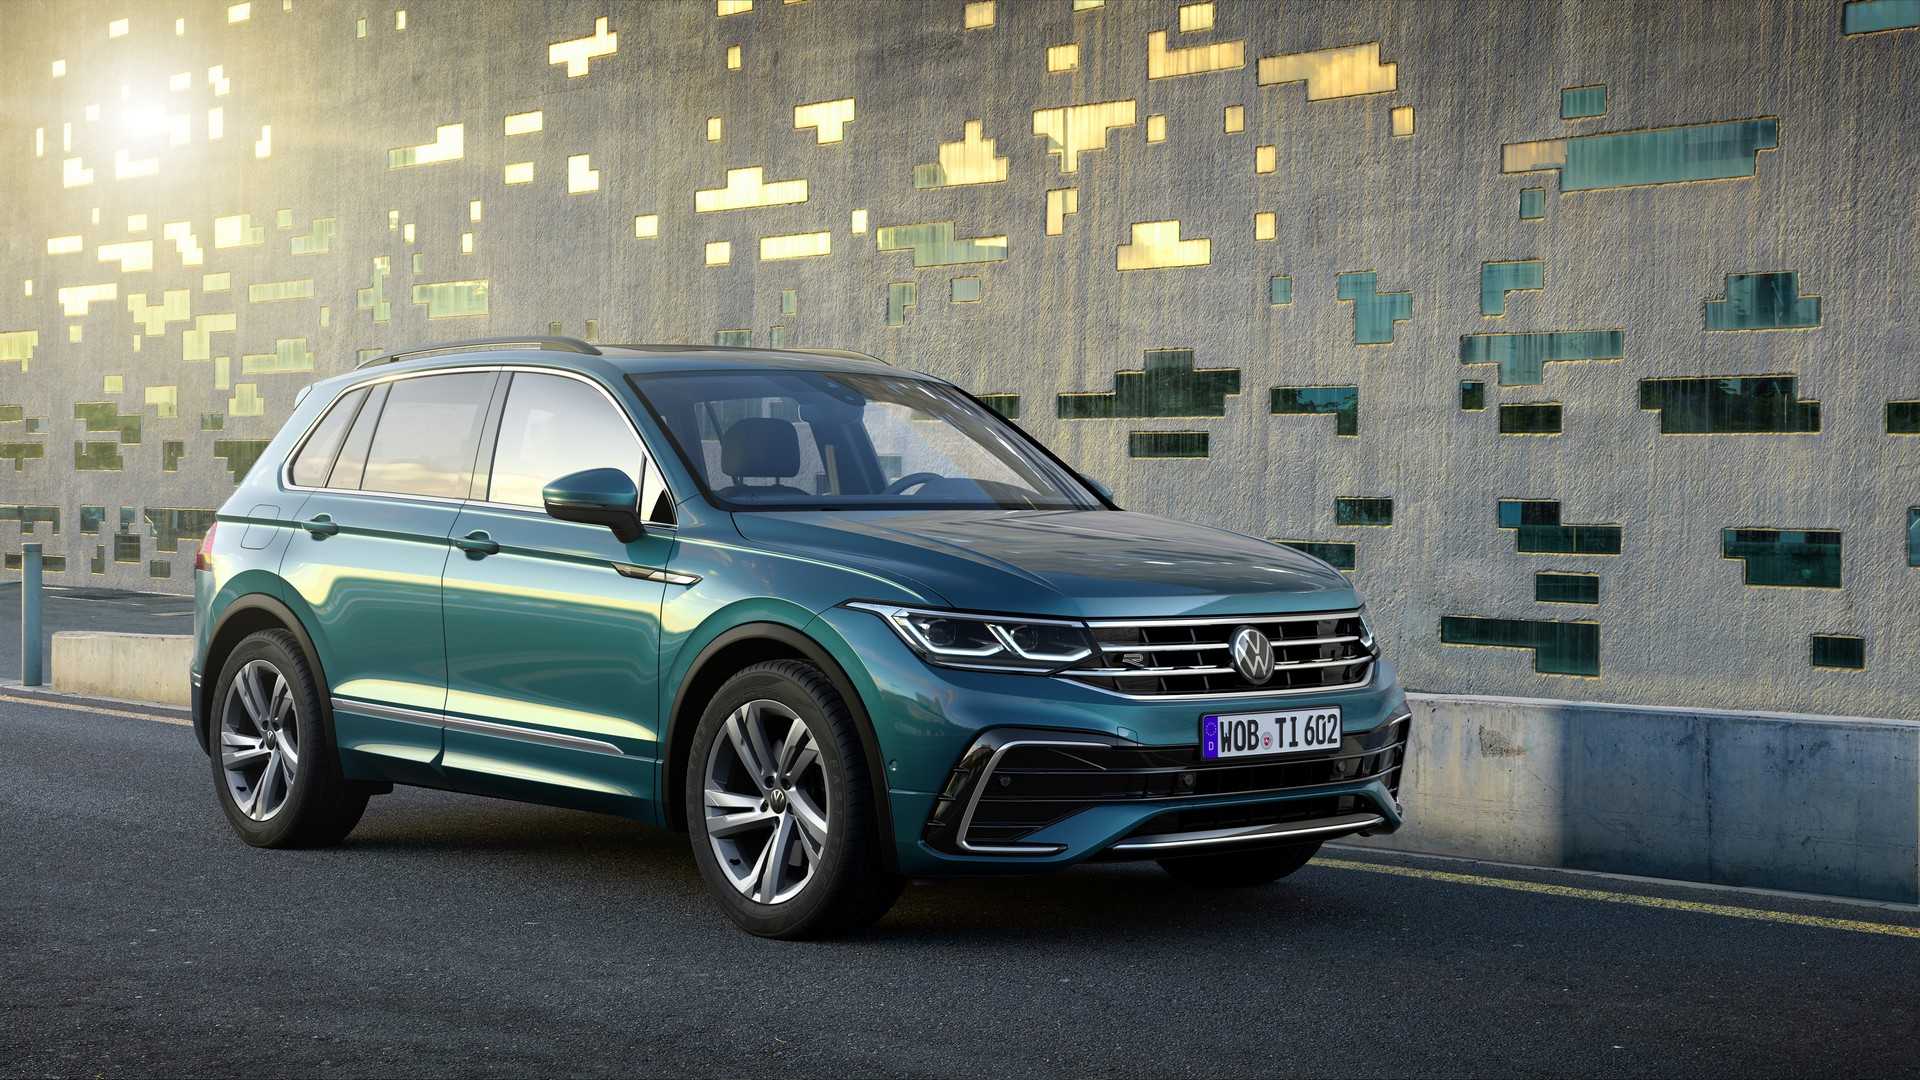 Volkswagen Tiguan 2020 r line